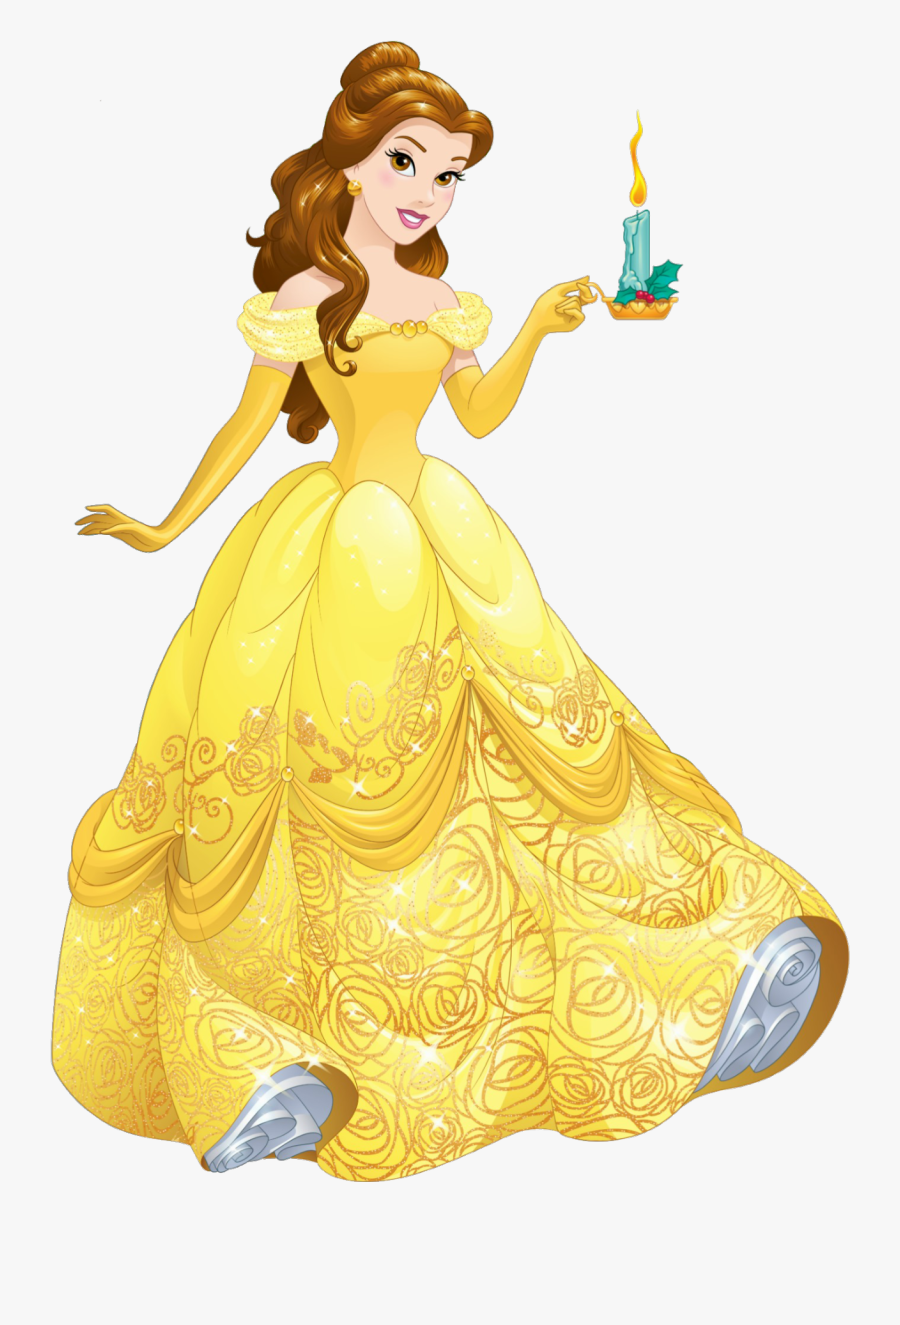 Disney Belle Clipart - Disney Princess Png Hd, Transparent Clipart